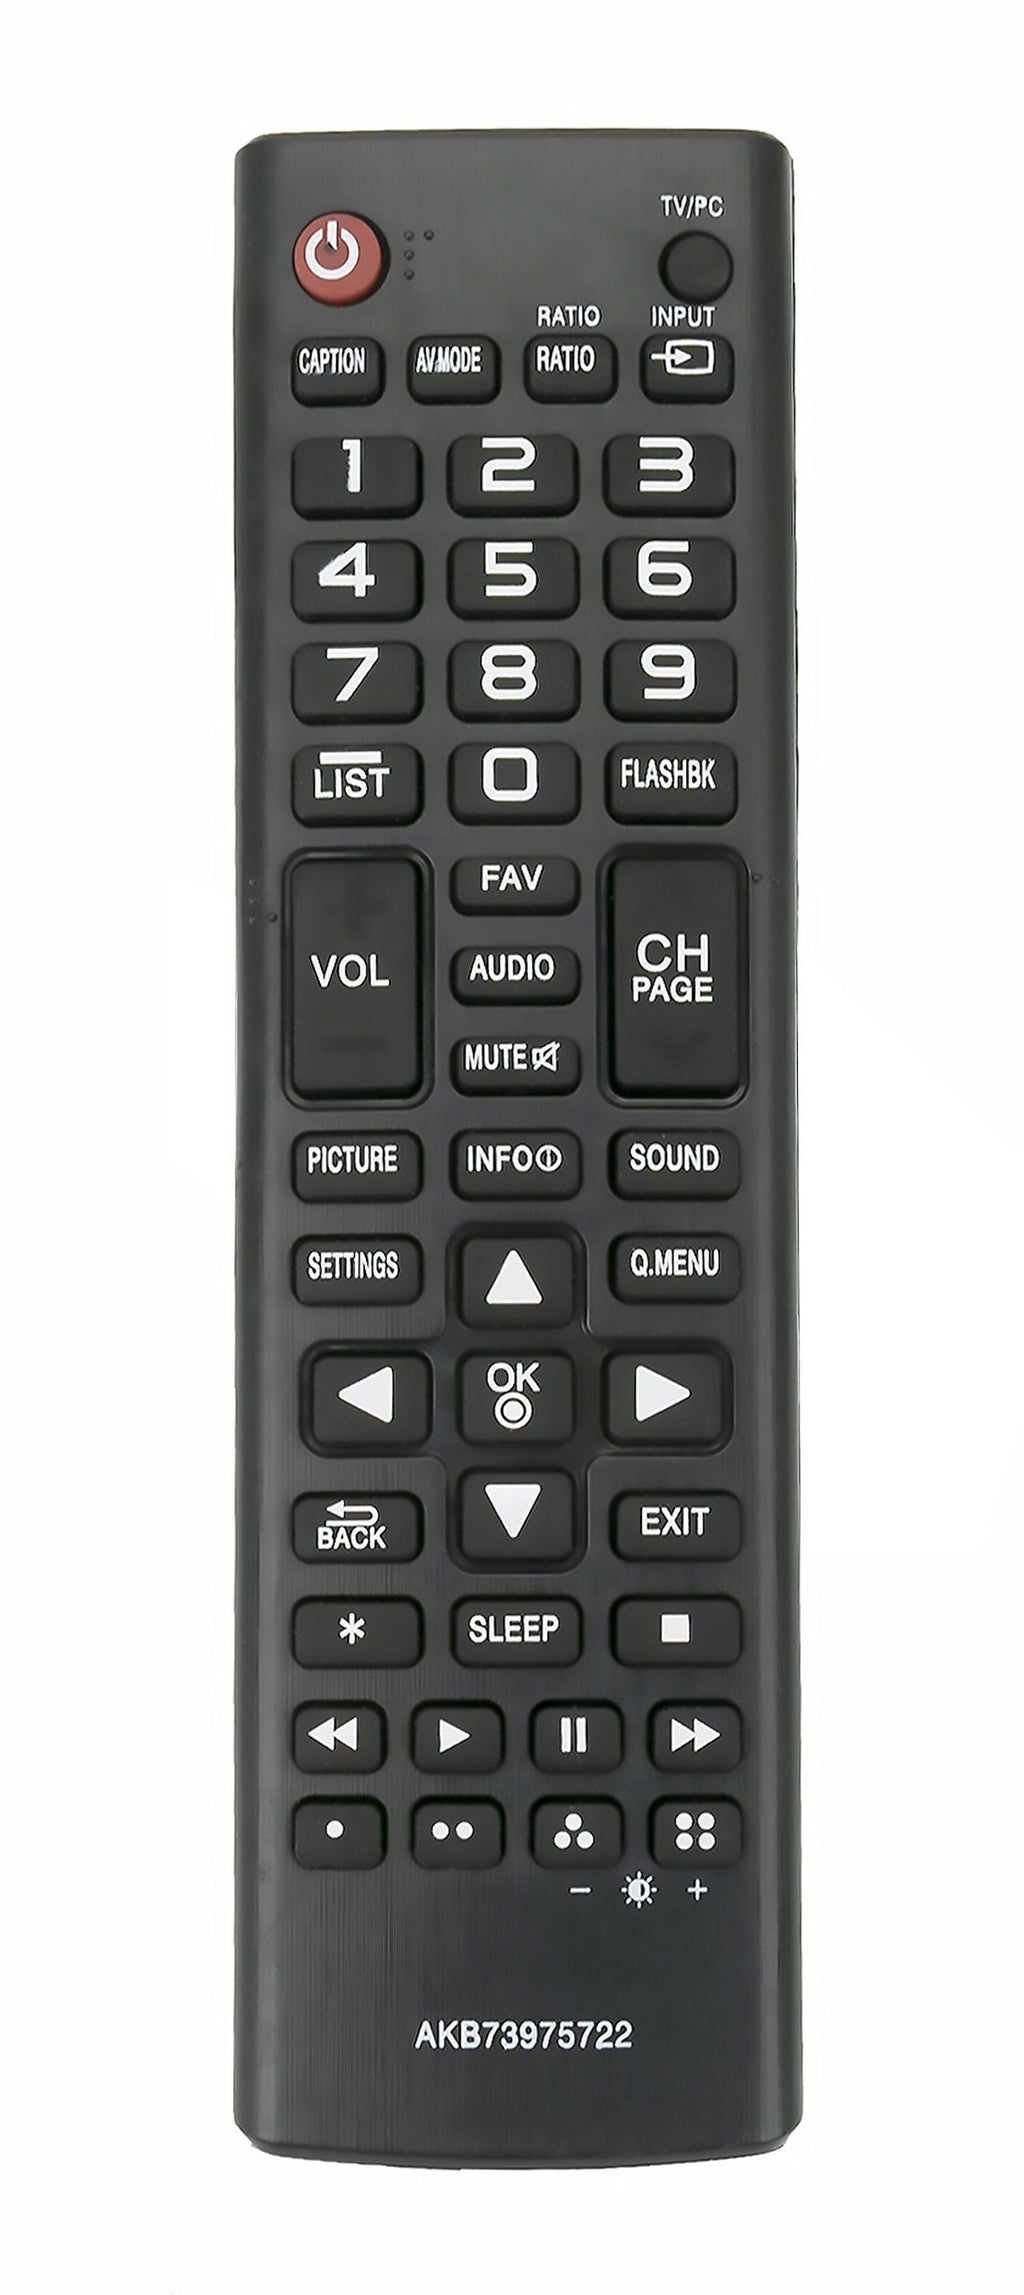 AKB73975722 Replace Remote fit for LG TV 22LB4510 22LB4510PU 22LB4510-PU 22LF4520 22LF4520WU 22LF4520-WU 22LH4530 22LH4530P 22LH4530-P 22LJ4540 22LJ4540PU 22LJ4540-PU 22LJ4540WU 22LJ4540-WU - LeoForward Australia